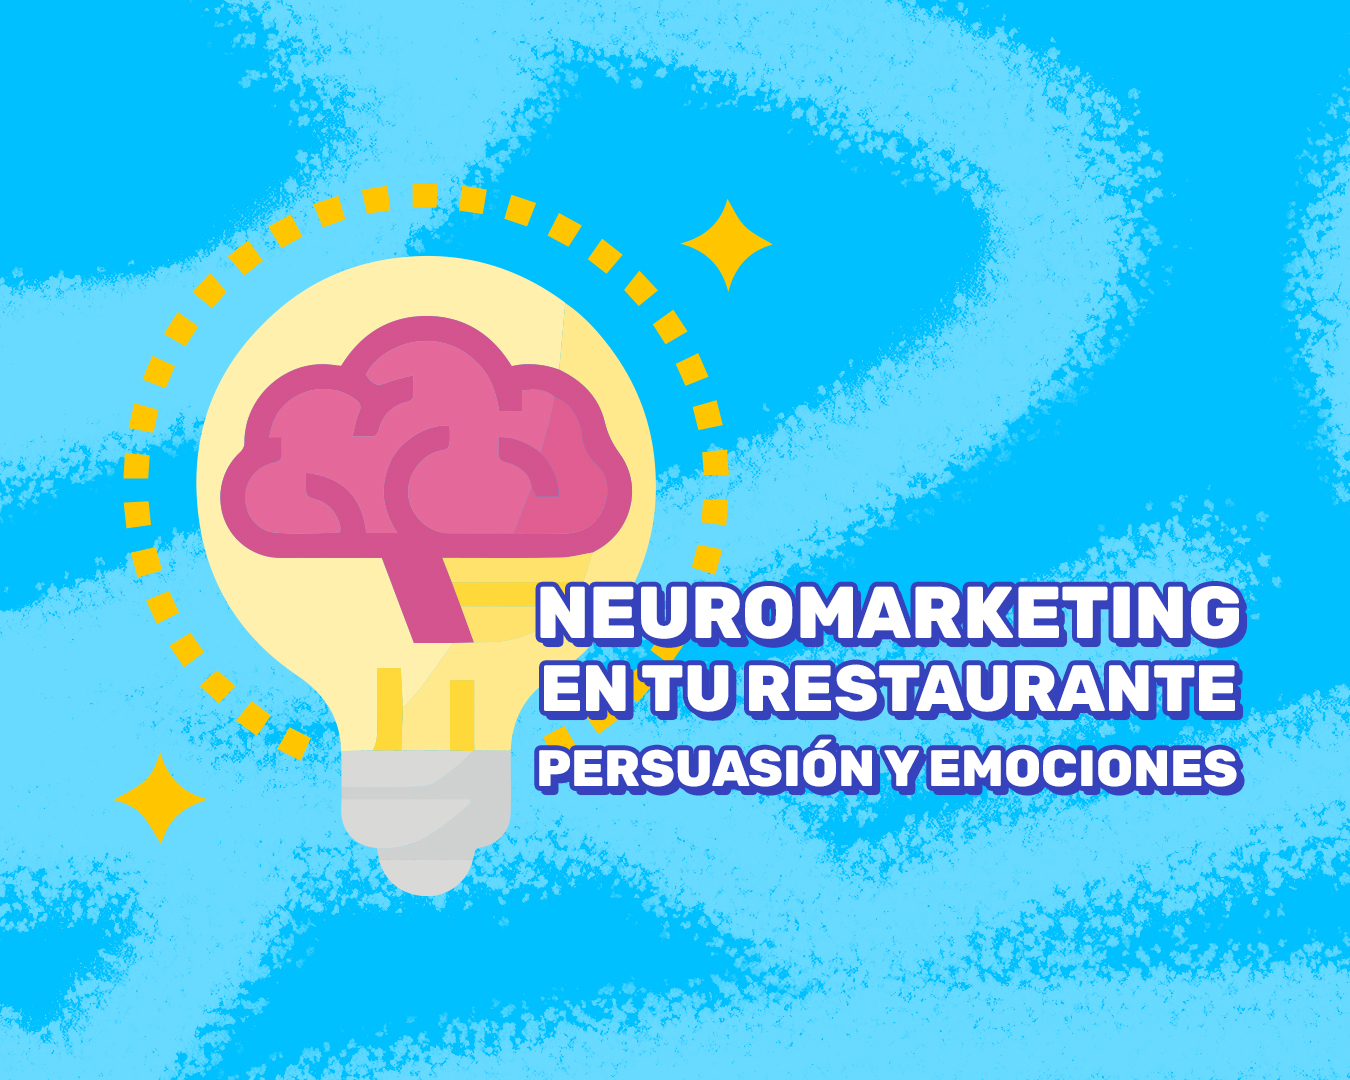 Cómo Aplicar el Neuromarketing en tu Restaurante: Persuasión y Emociones